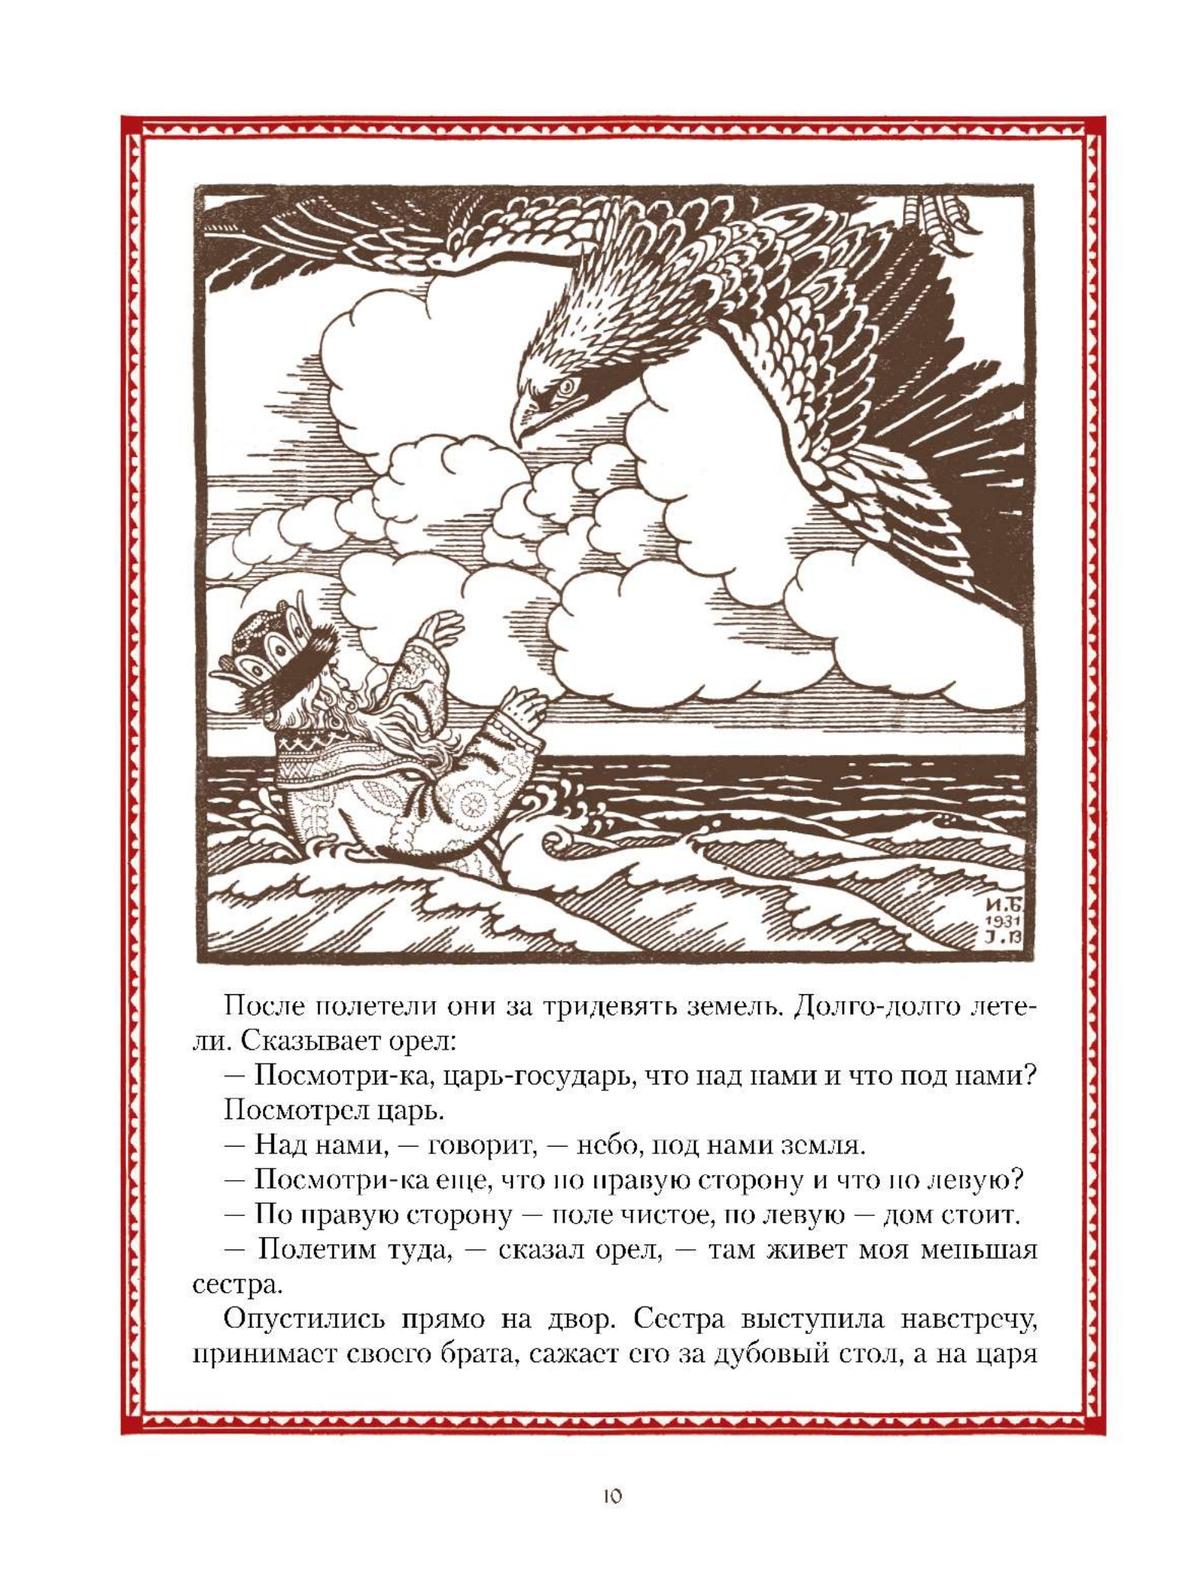 Все русские сказки в иллюстрациях Ивана Билибина 8